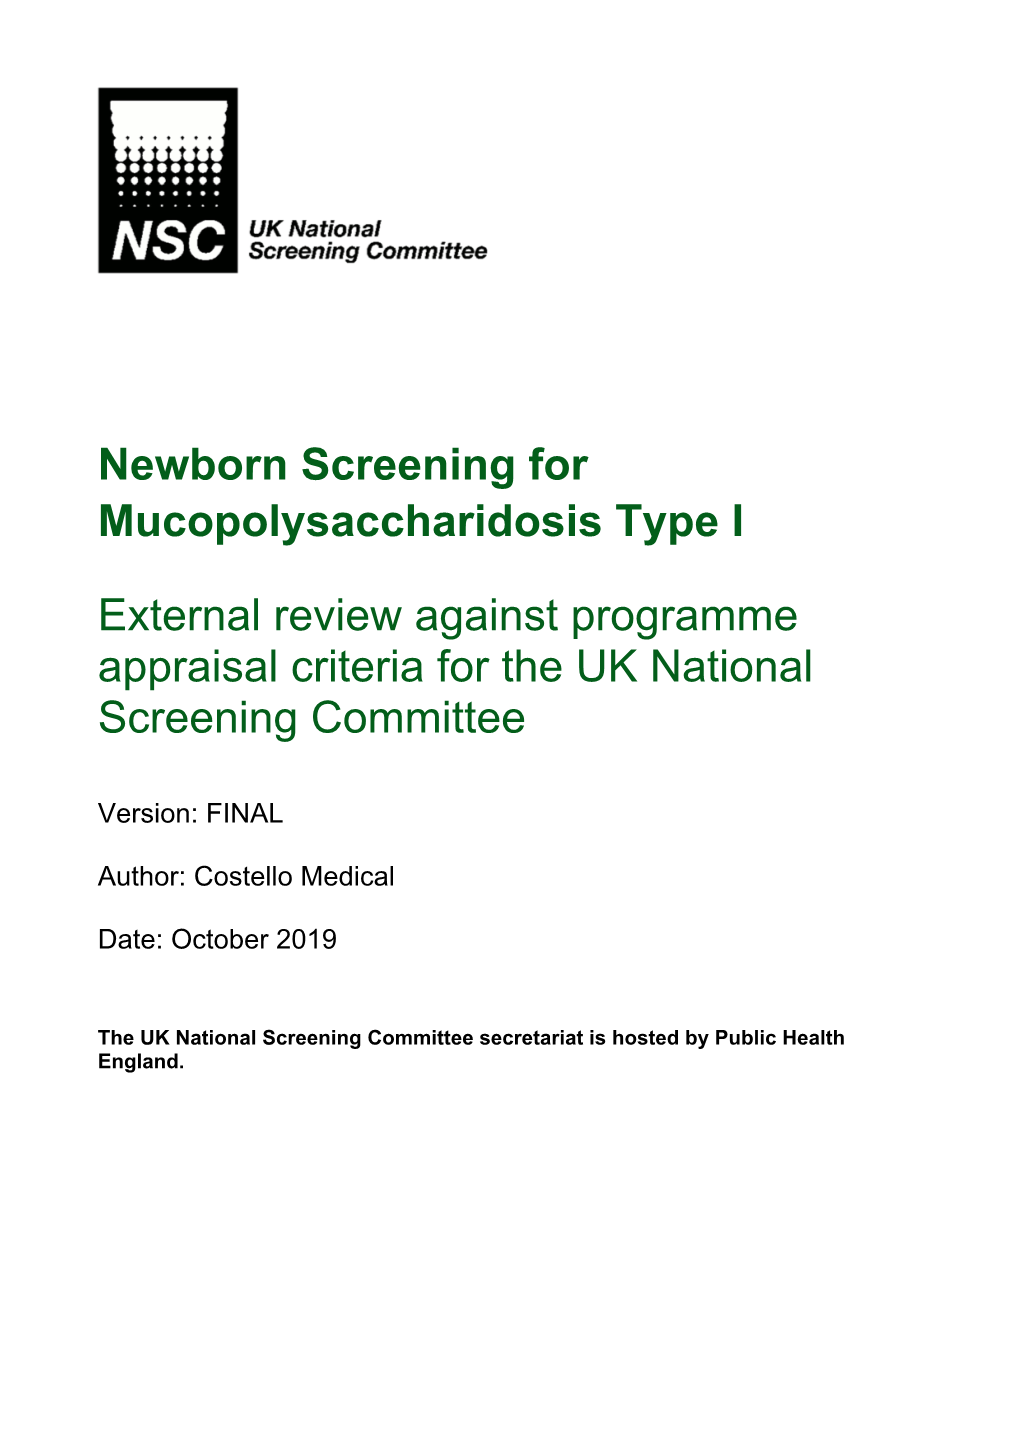 Newborn Screening for Mucopolysaccharidosis Type I